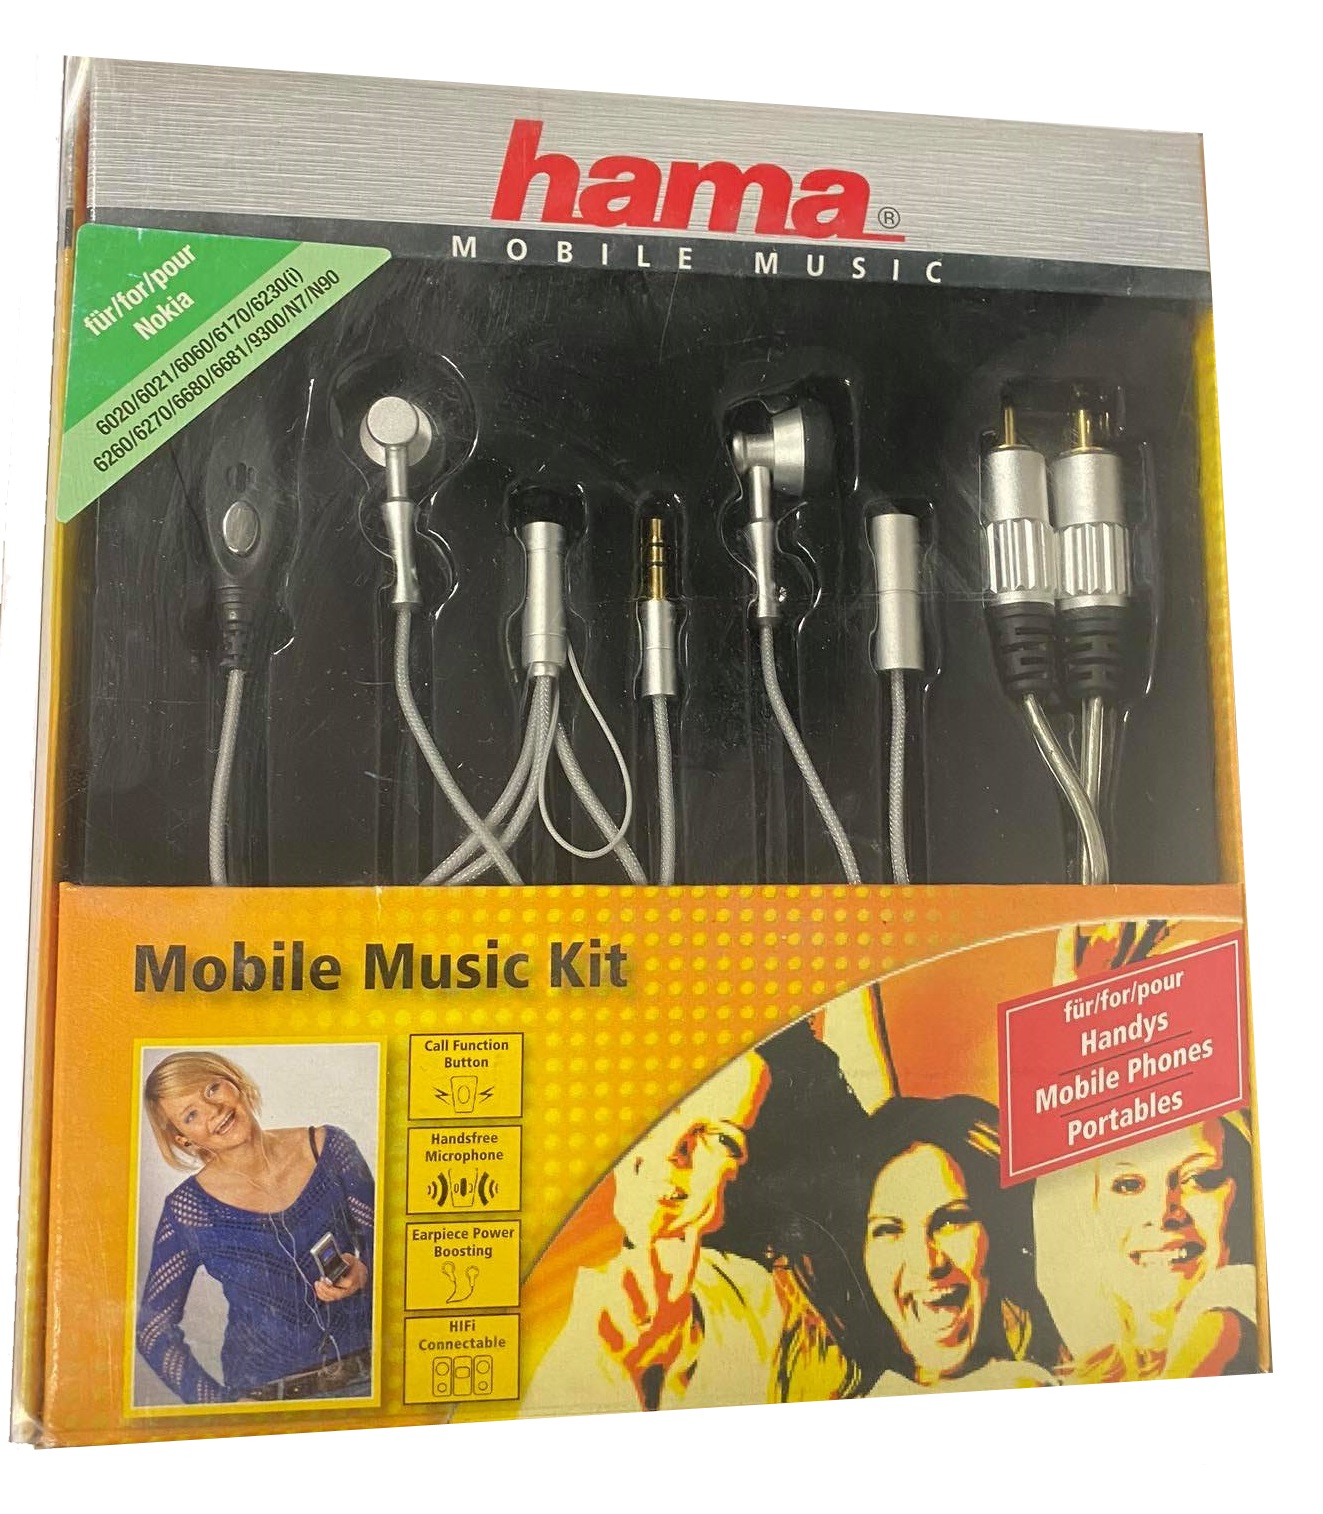 Mobile Music Kit Nokia